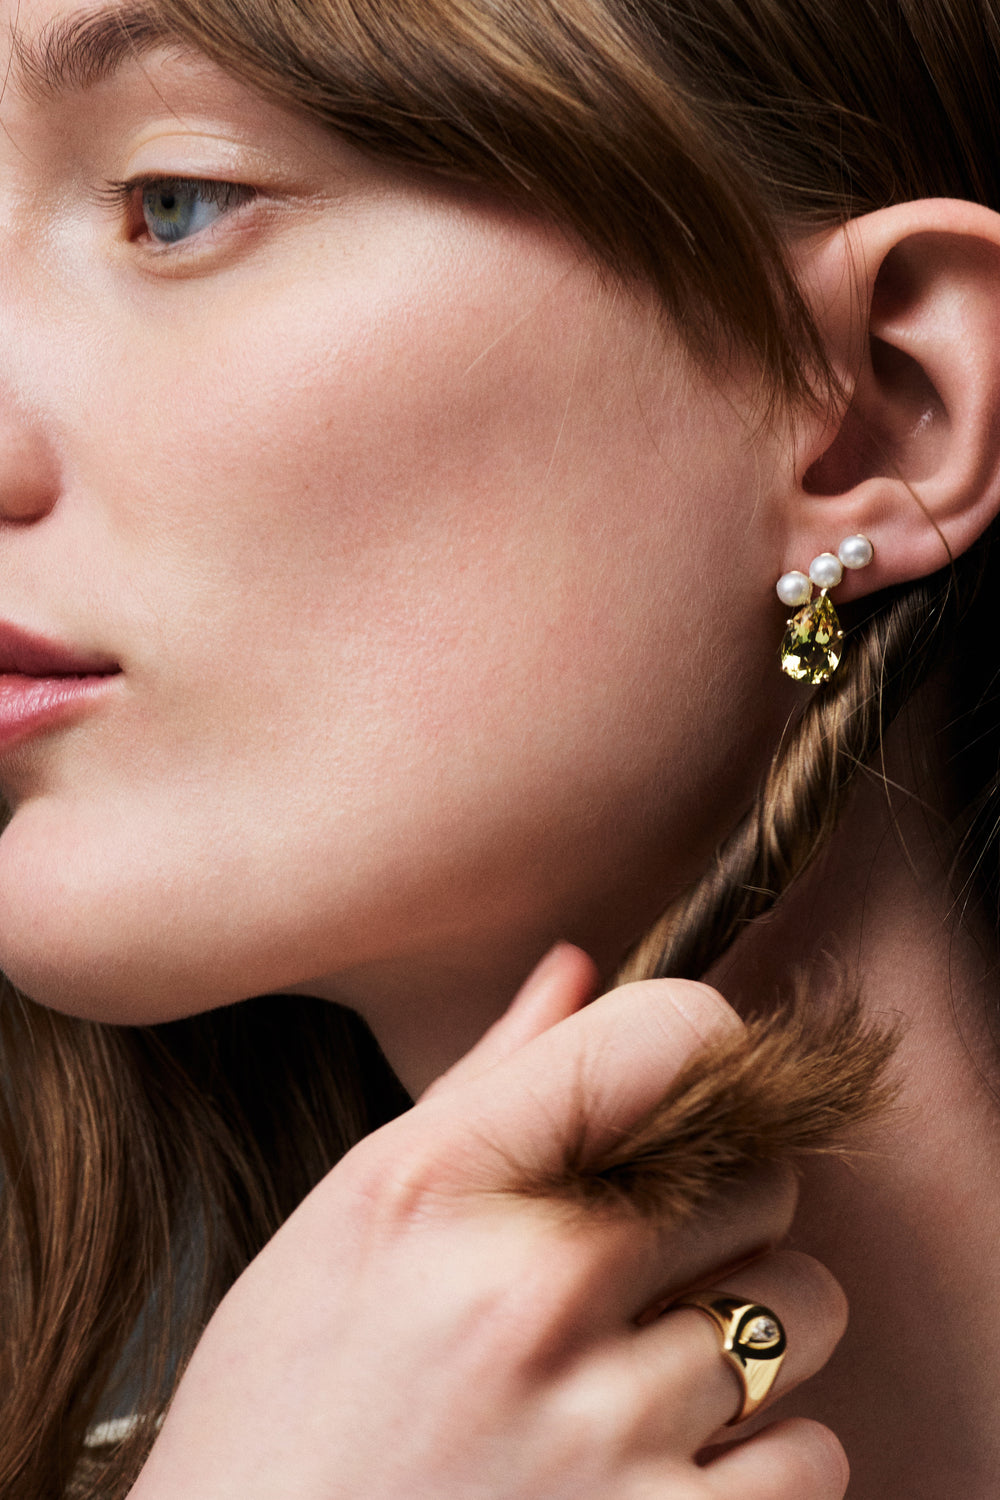 Arwen Lemon Quartz Pearl Earrings | 9K Yellow Gold| Natasha Schweitzer